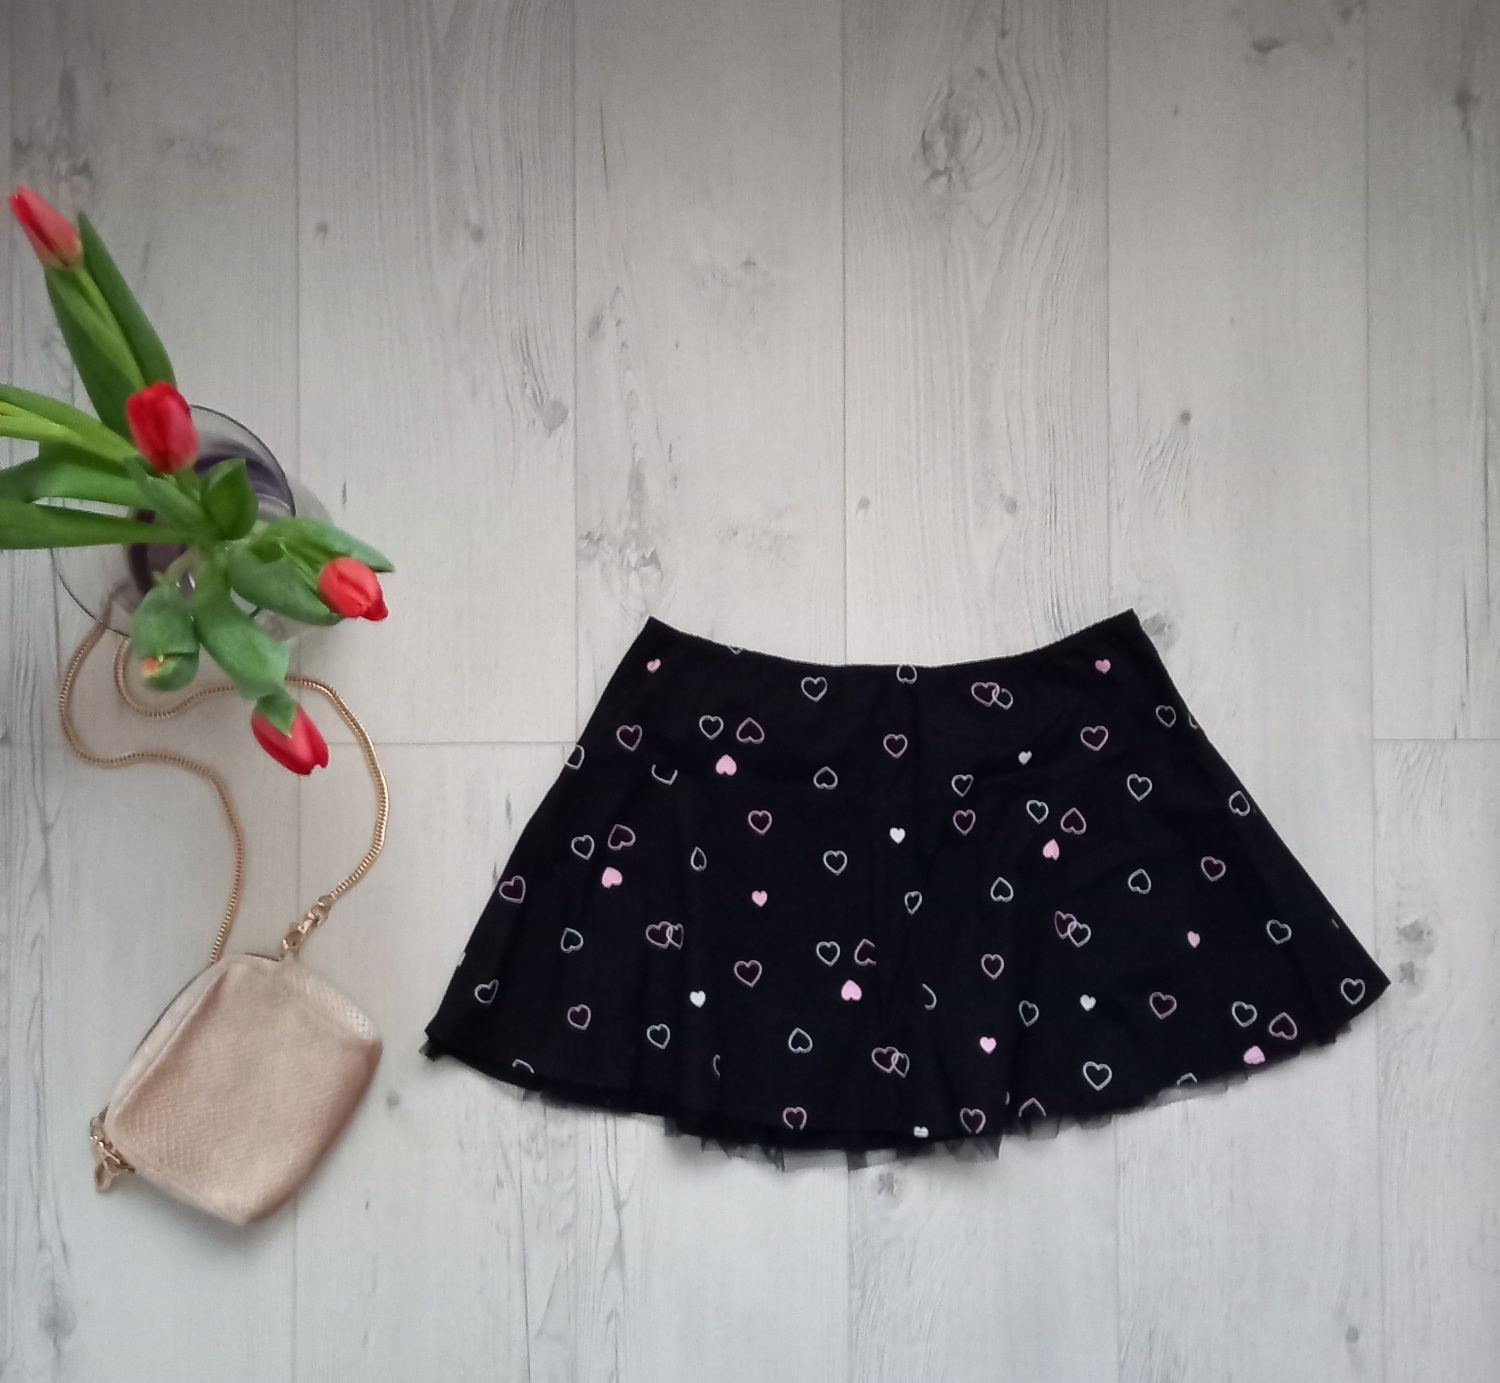 Spódnica mini i bluzka  top czarna pudrowy róż